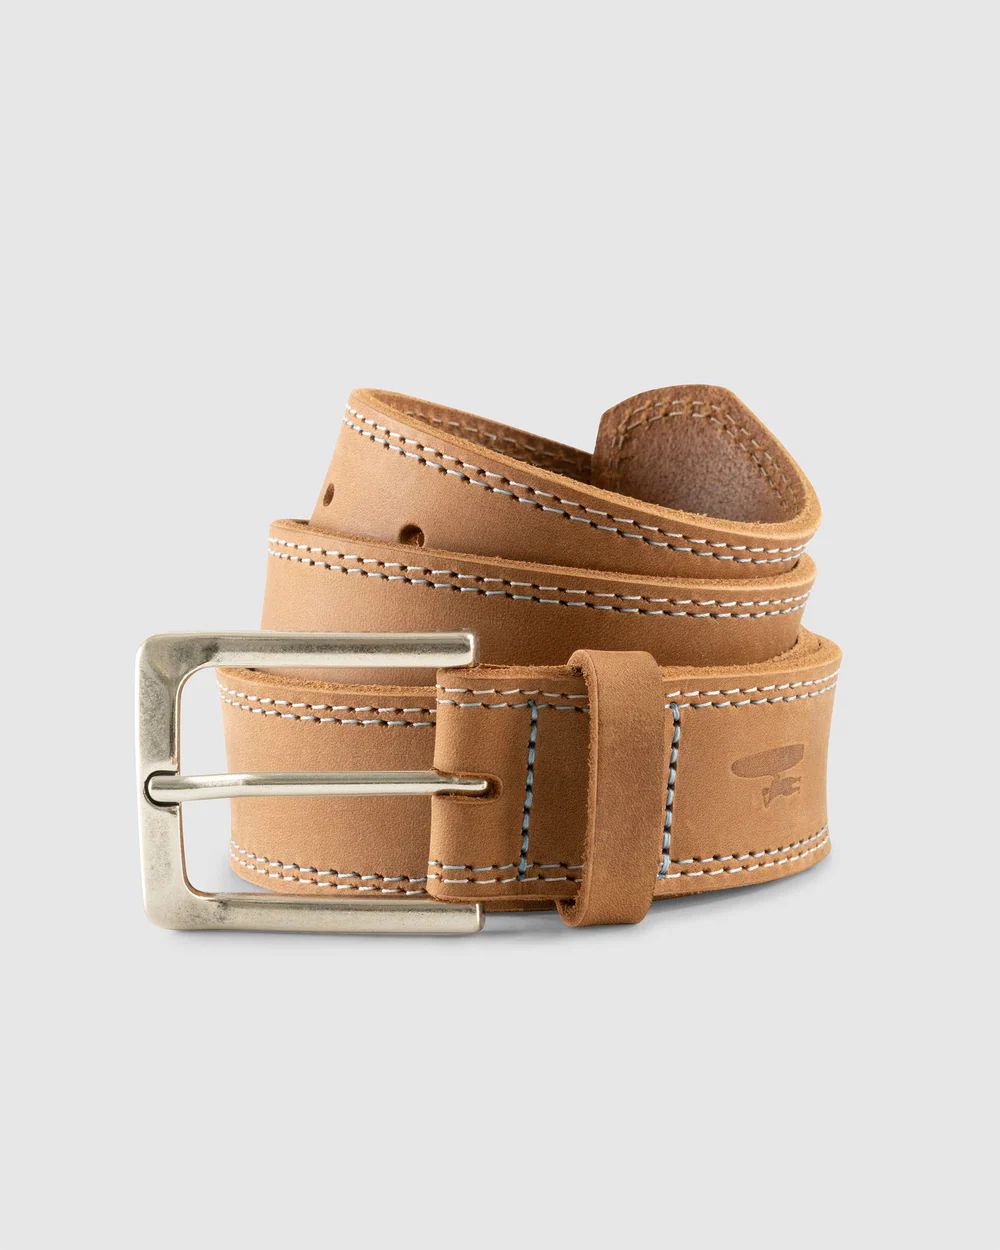 Double Stitch Leather Belt | johnnie O